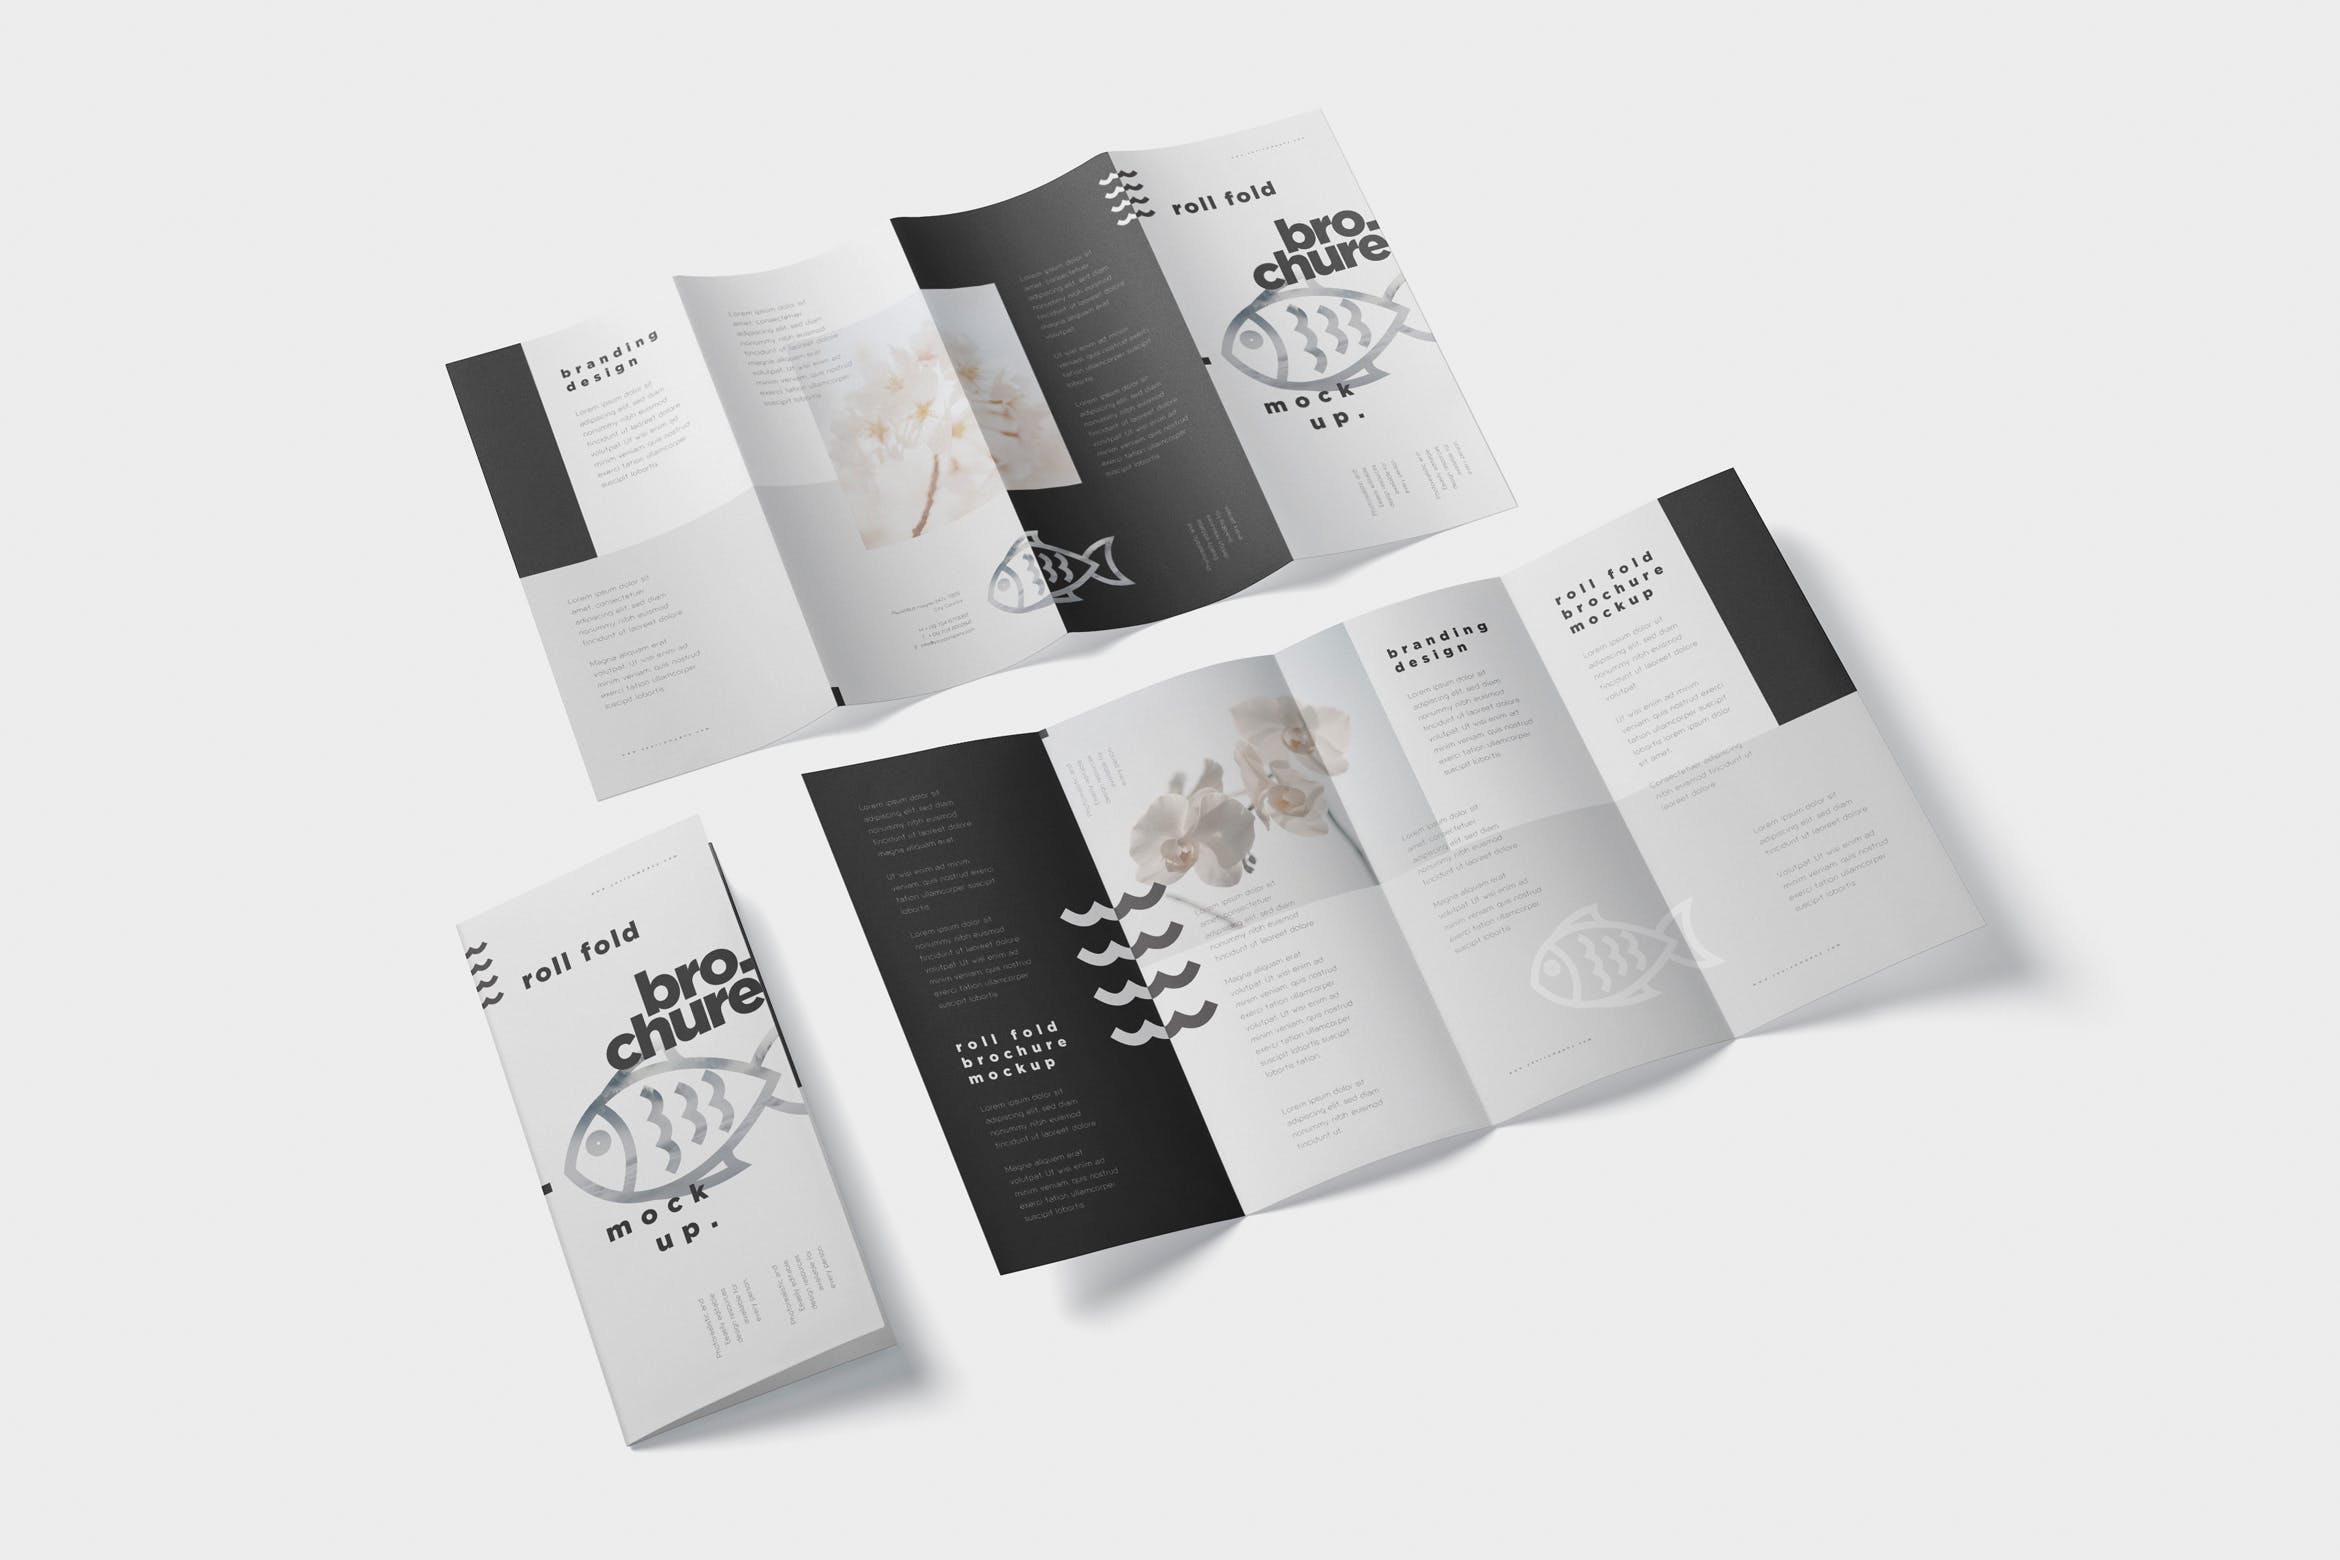 折叠设计风格企业传单/宣传册设计样机16图库精选 Roll-Fold Brochure Mockup – DL DIN Lang Size插图